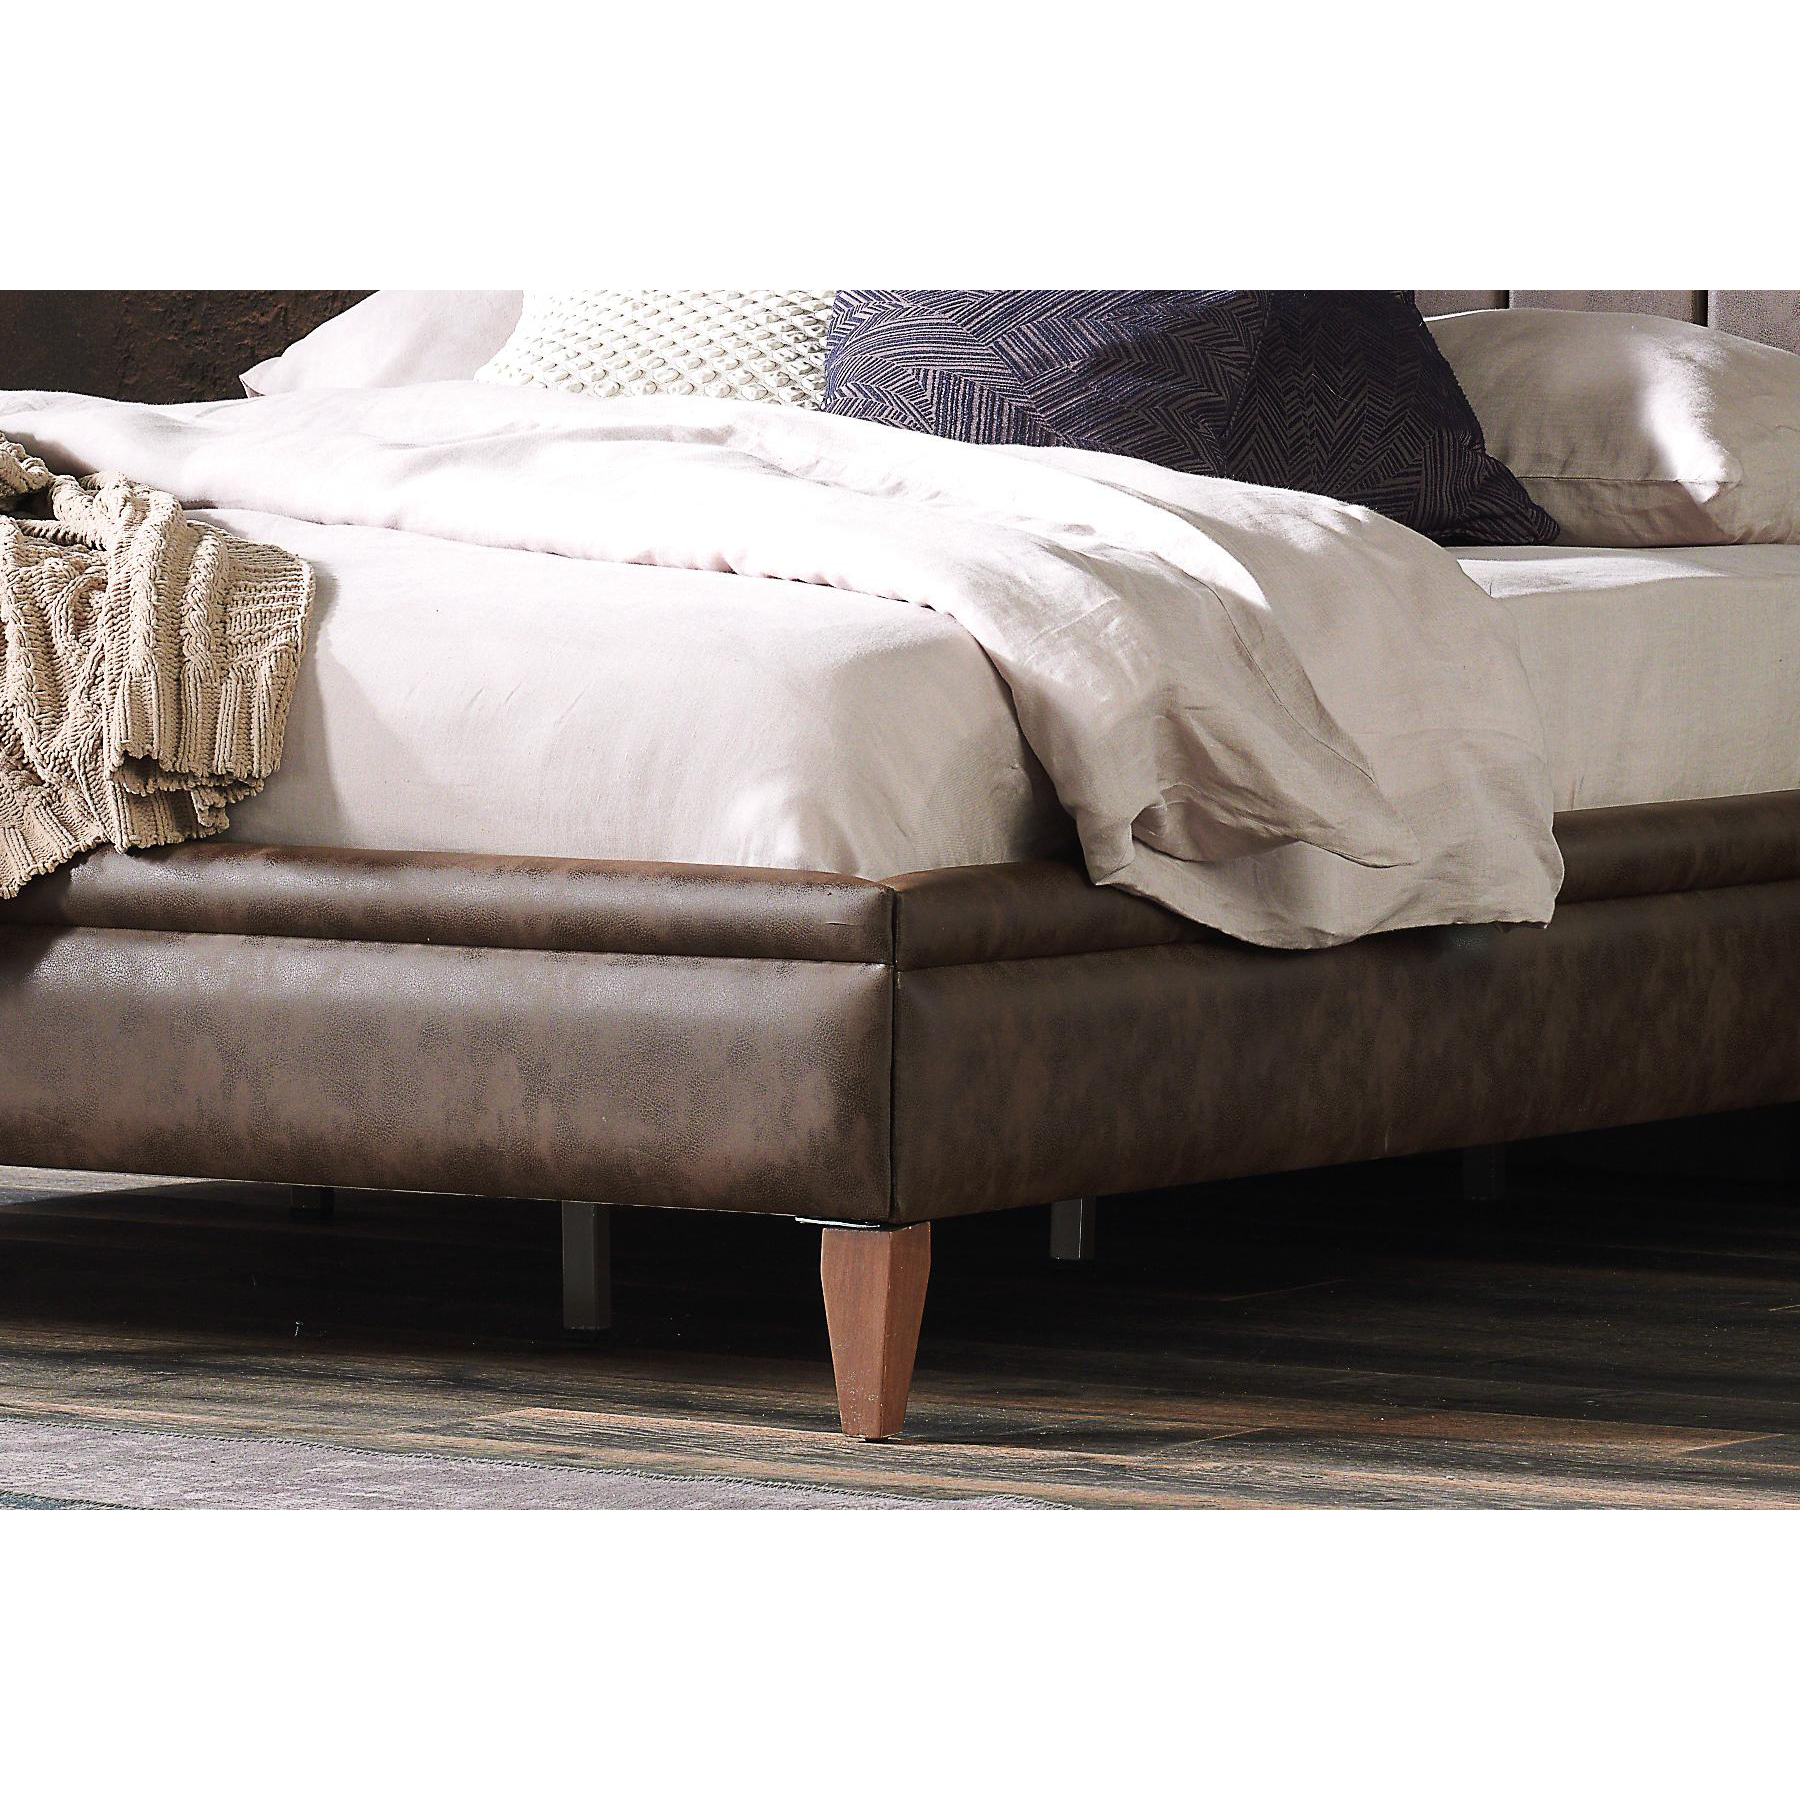 Кровать Enza Home Elegante,180х200, с подъёмным механизмом, цвет коричневый 308 (EH59508)EH59508